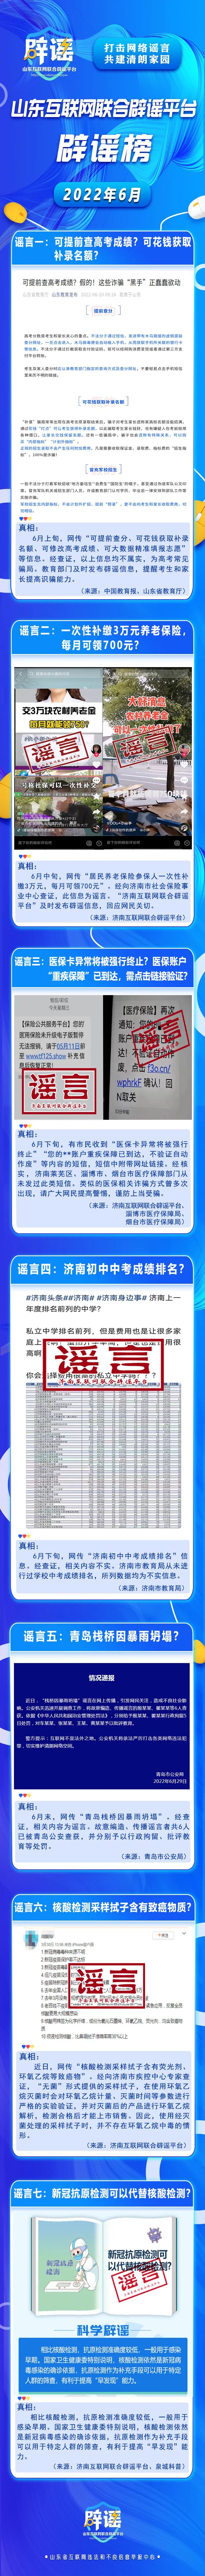 山东互联网联合辟谣平台发布6月辟谣榜|山东省